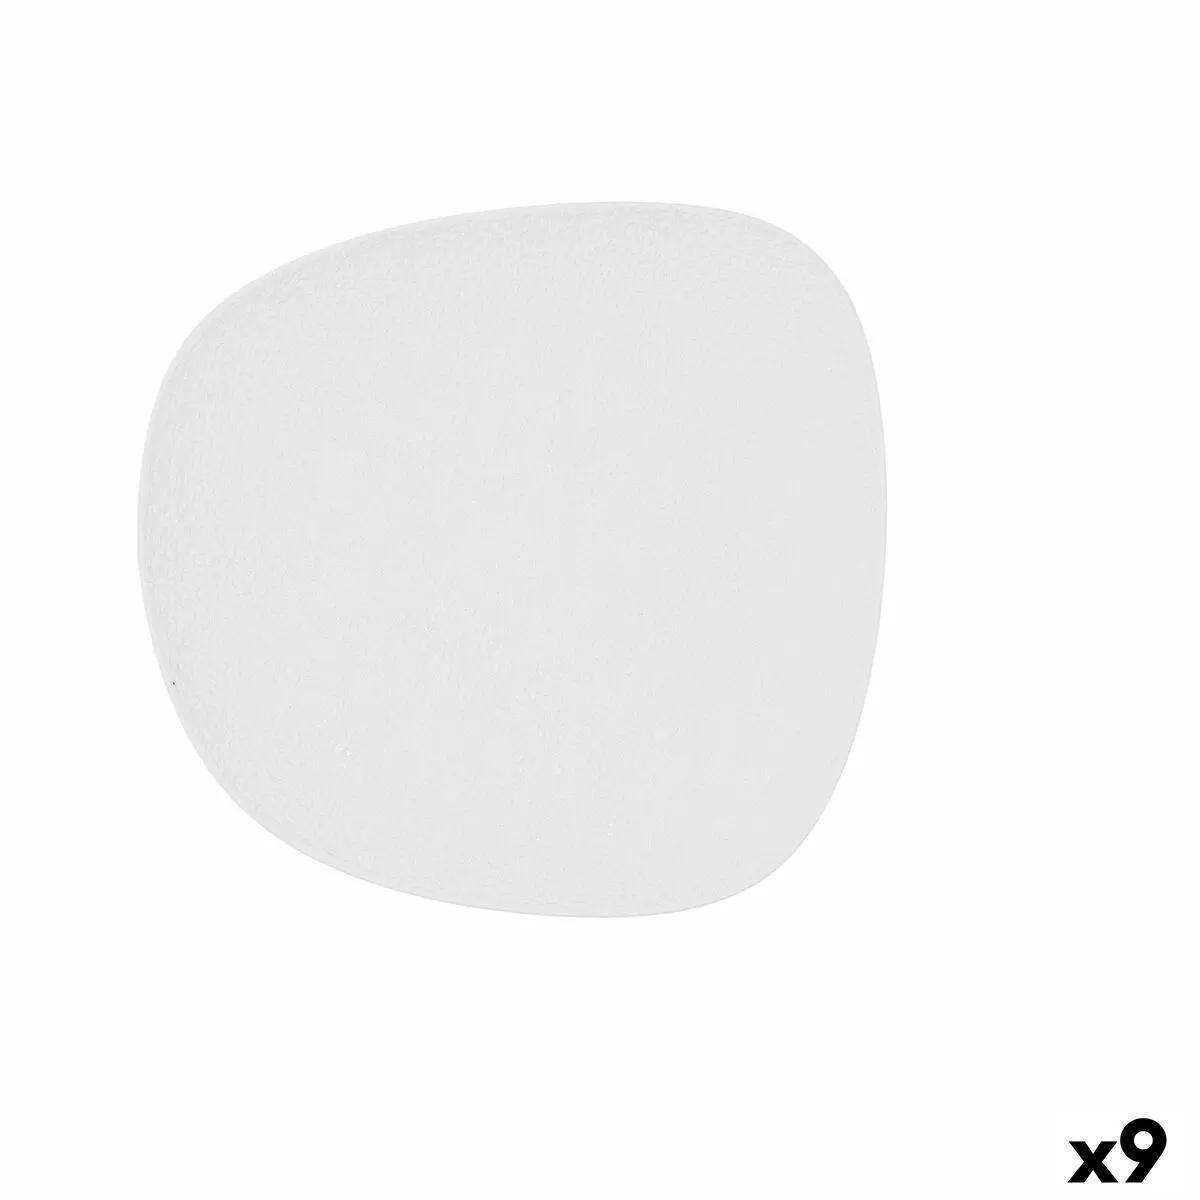 Piatto da pranzo Bidasoa Fosil Bianco Ceramica Quadrato 21,1 x 20,3 x 2,3 cm (9 Unità)